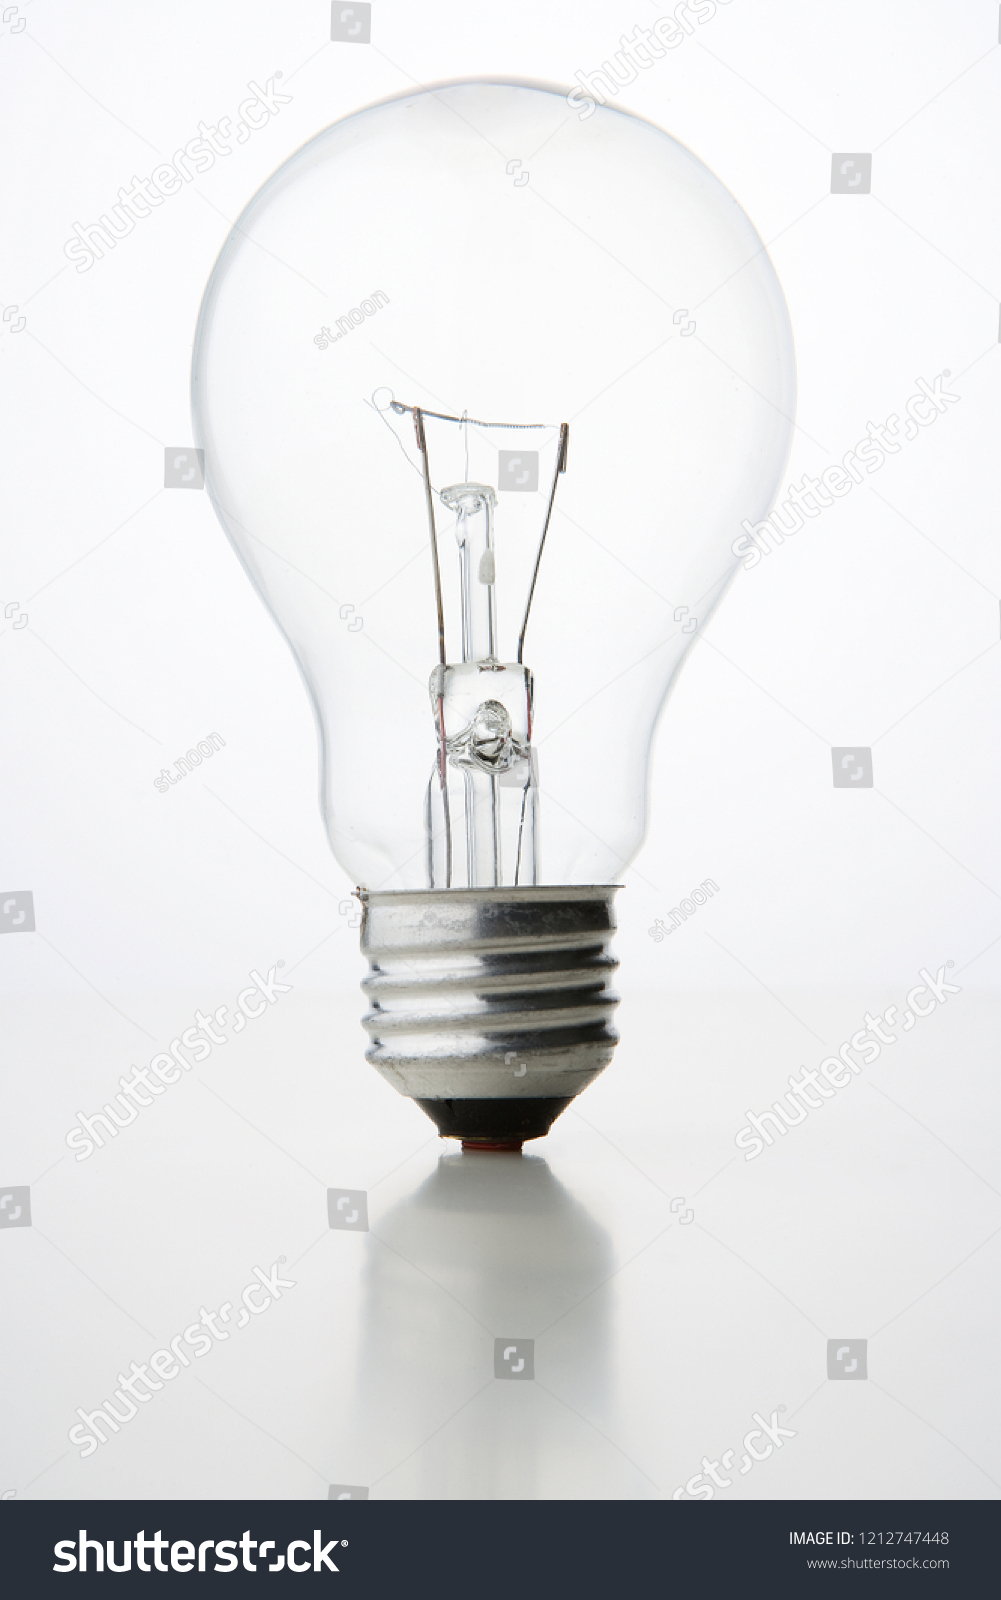 Light bulb on white background #1212747448